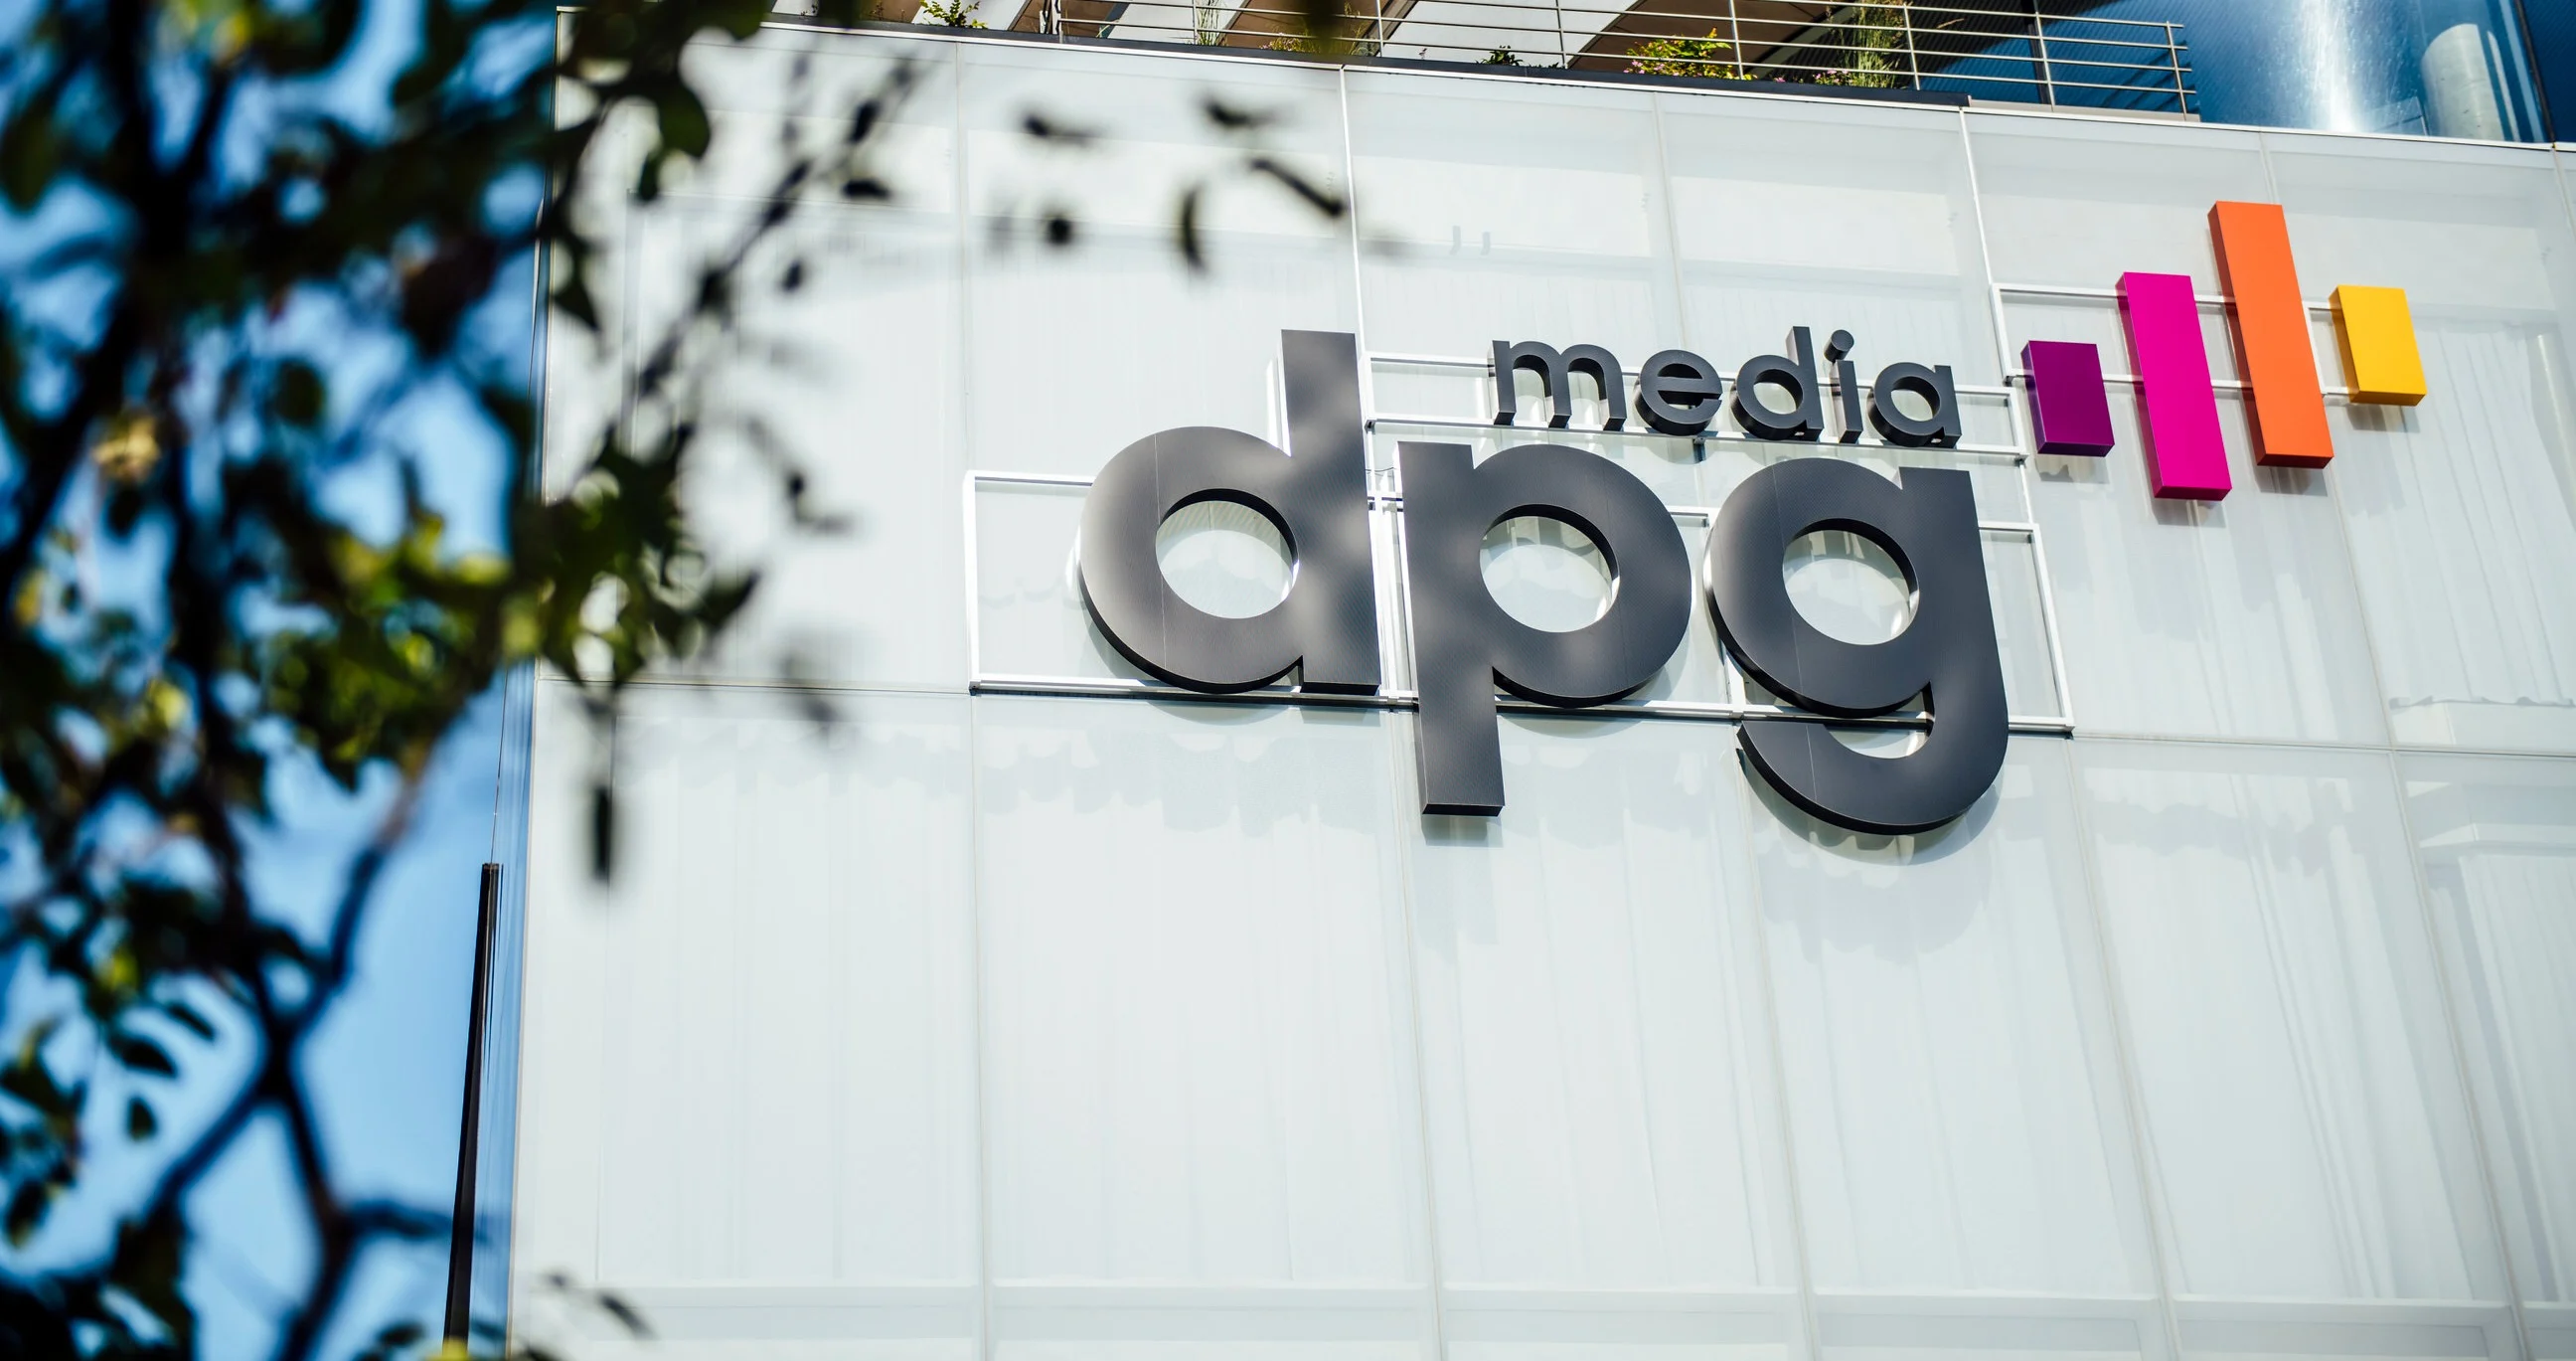 DPG Media logo on building